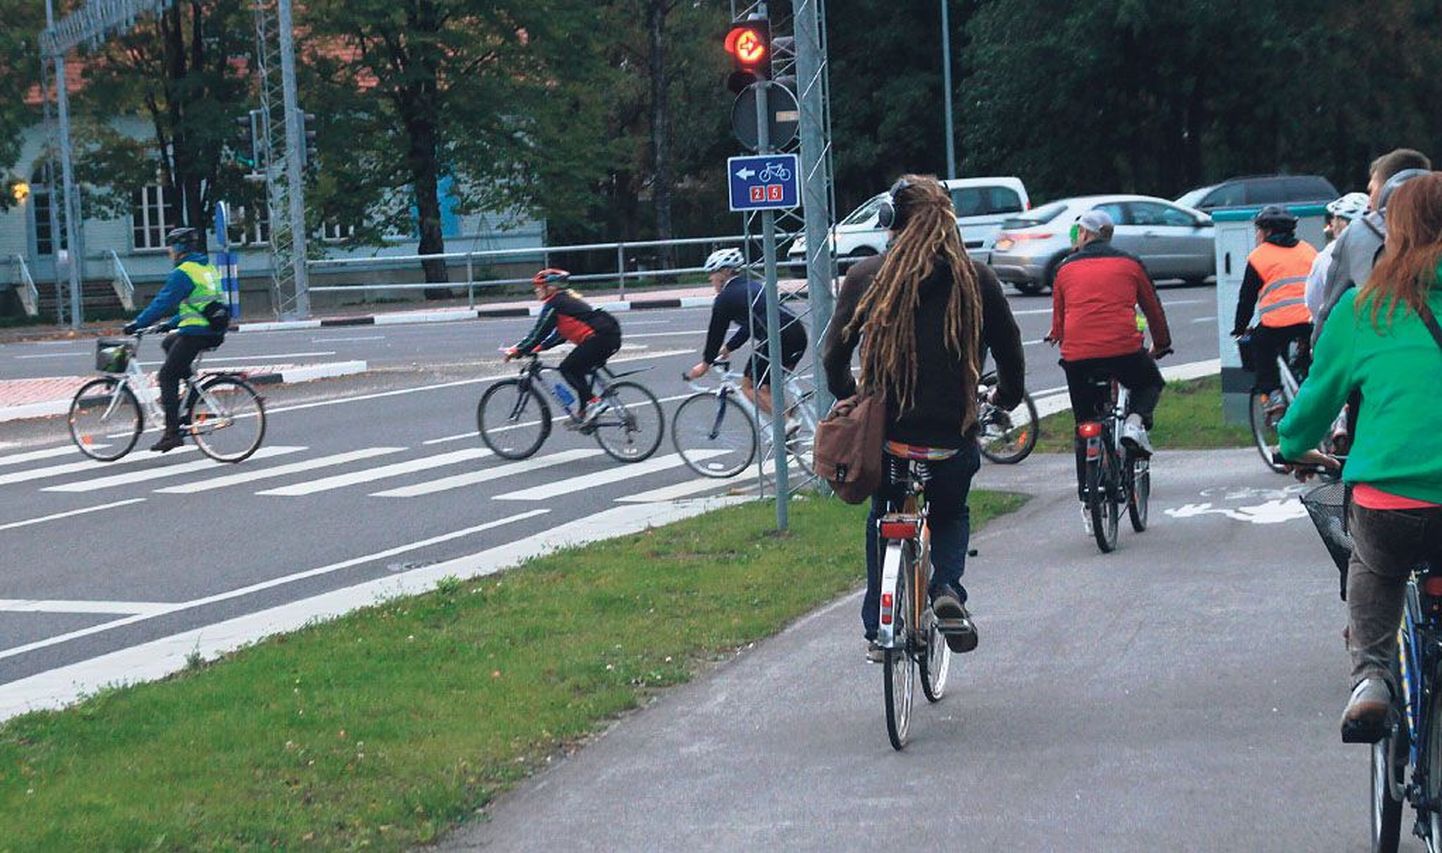 Ilma omavalitsuse toeta on linnalist kergliiklust suhteliselt keeruline edendada. Pärnusse on viimastel aastatel õnneks palju uusi ja häid rattateid juurde tulnud.